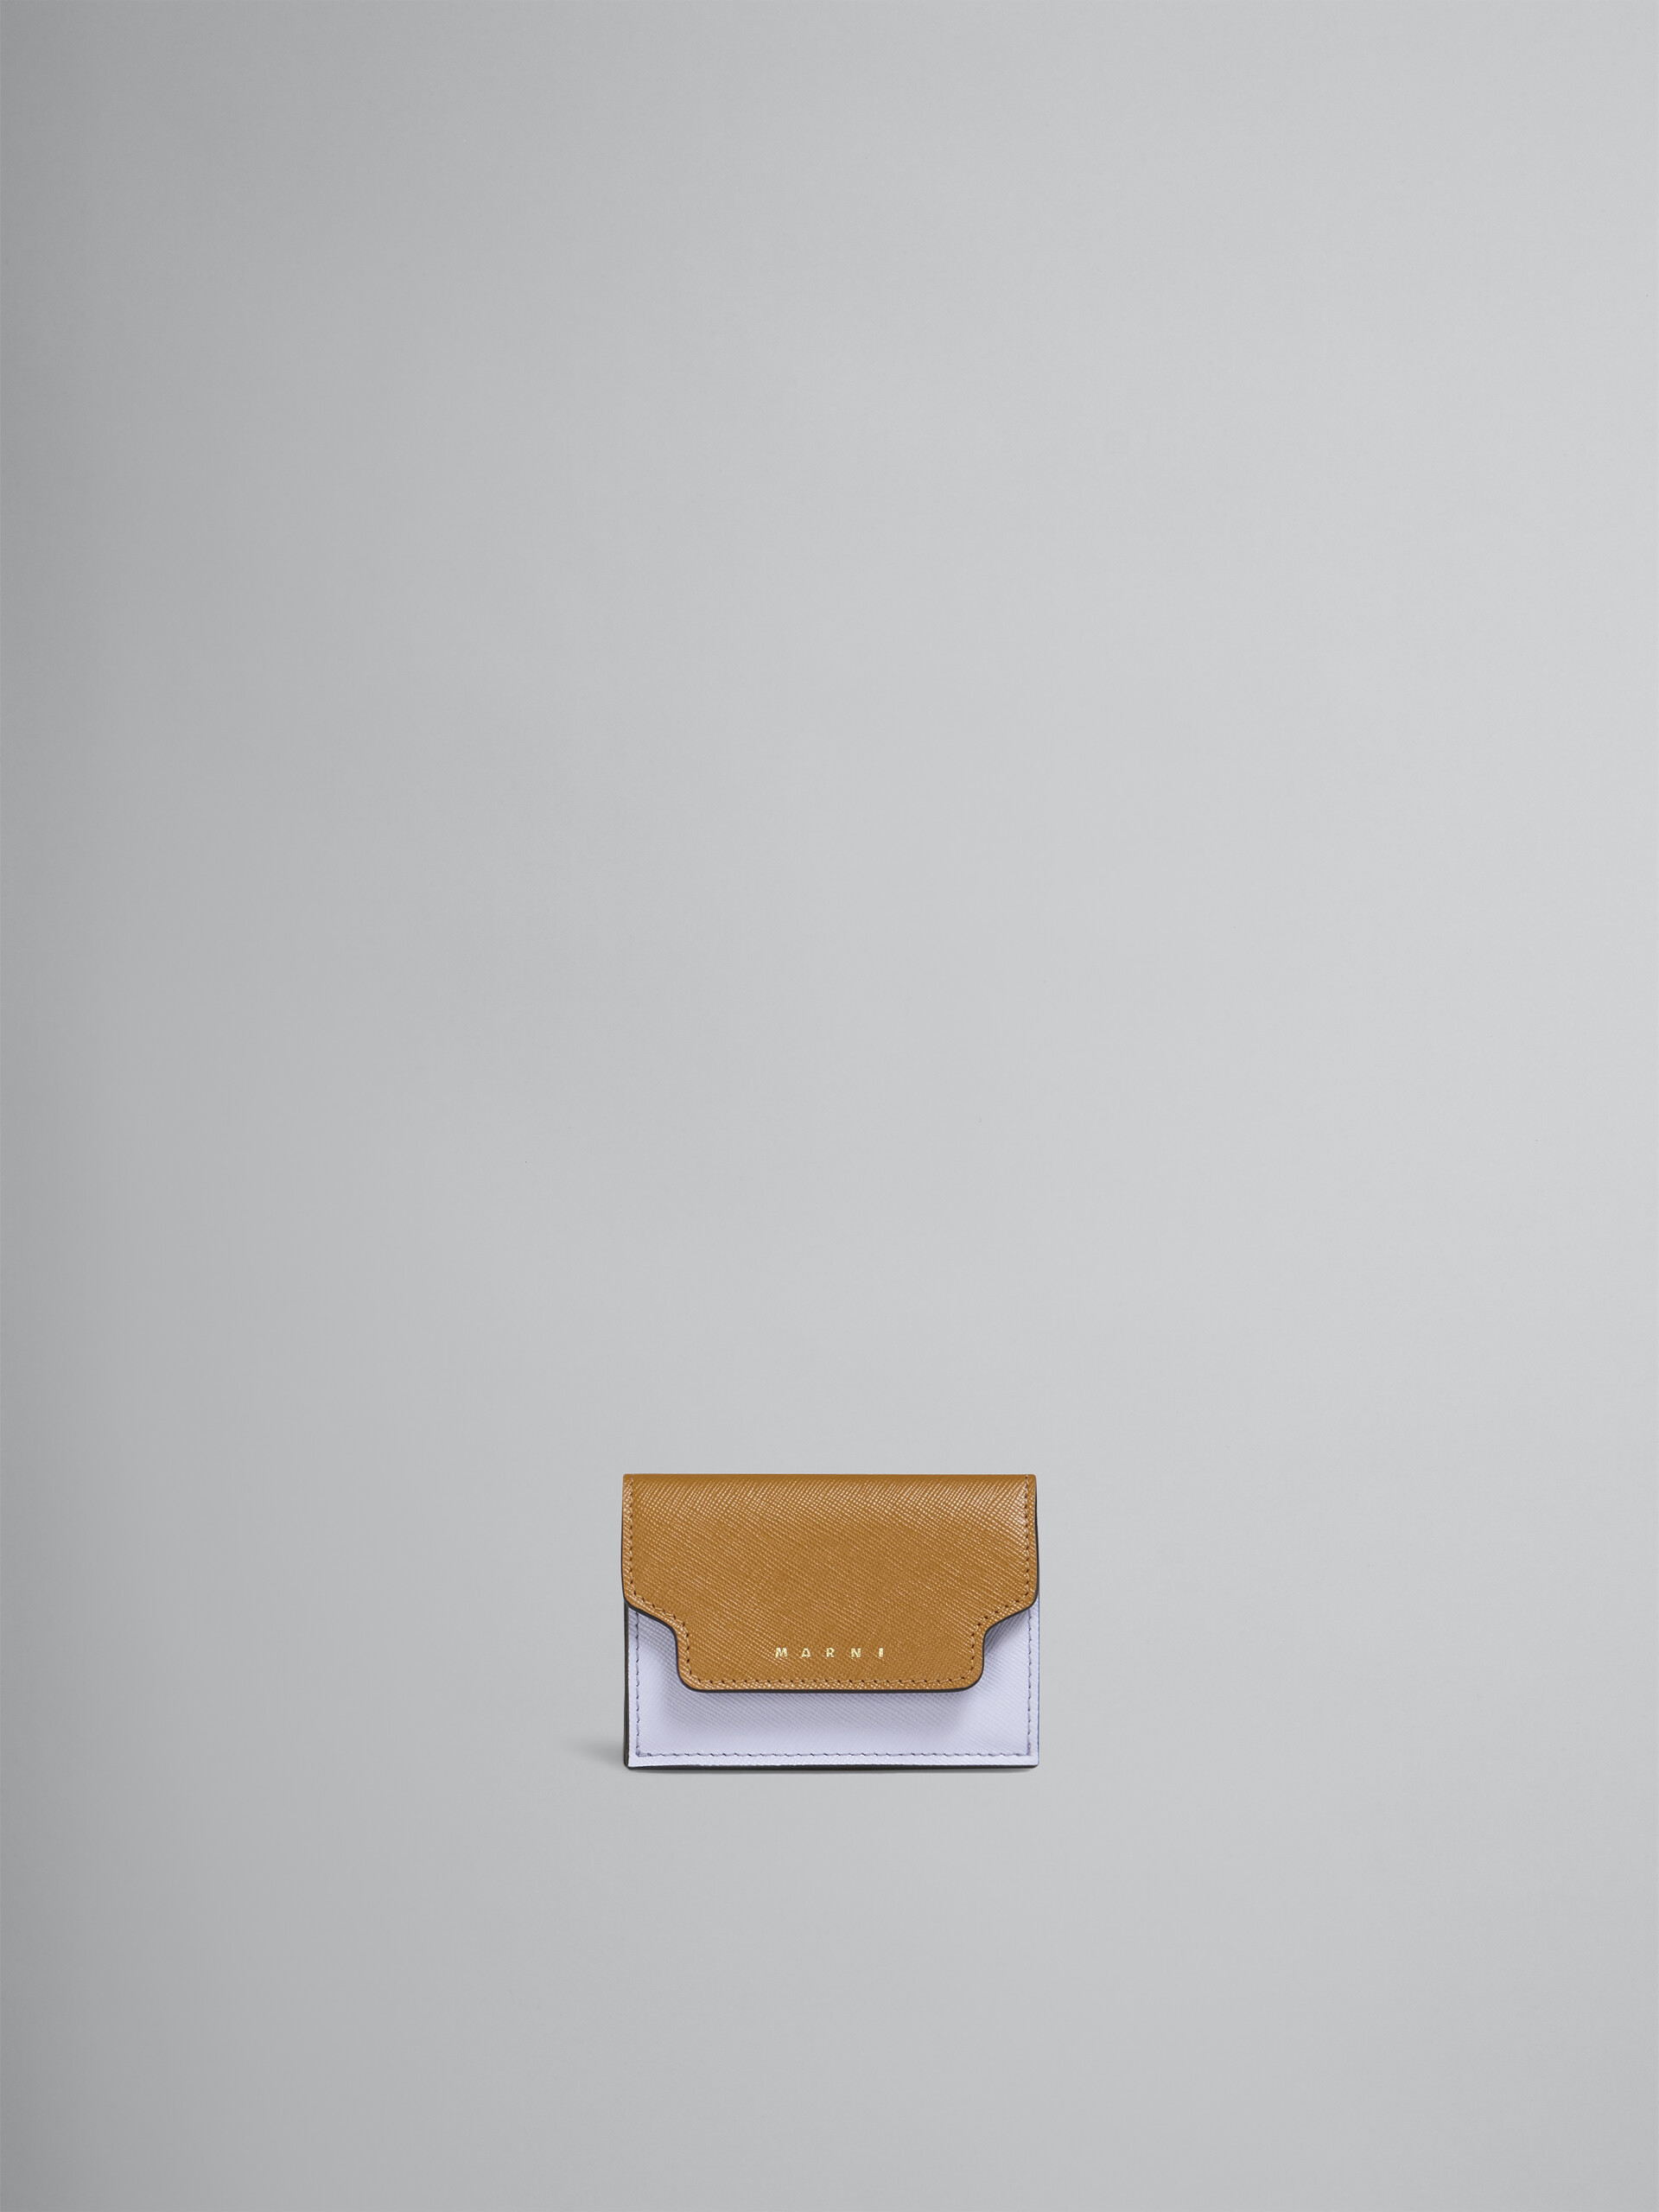 ブラウン ライラック・ブラック サフィアーノレザー製 三つ折りウォレット - 財布 - Image 1